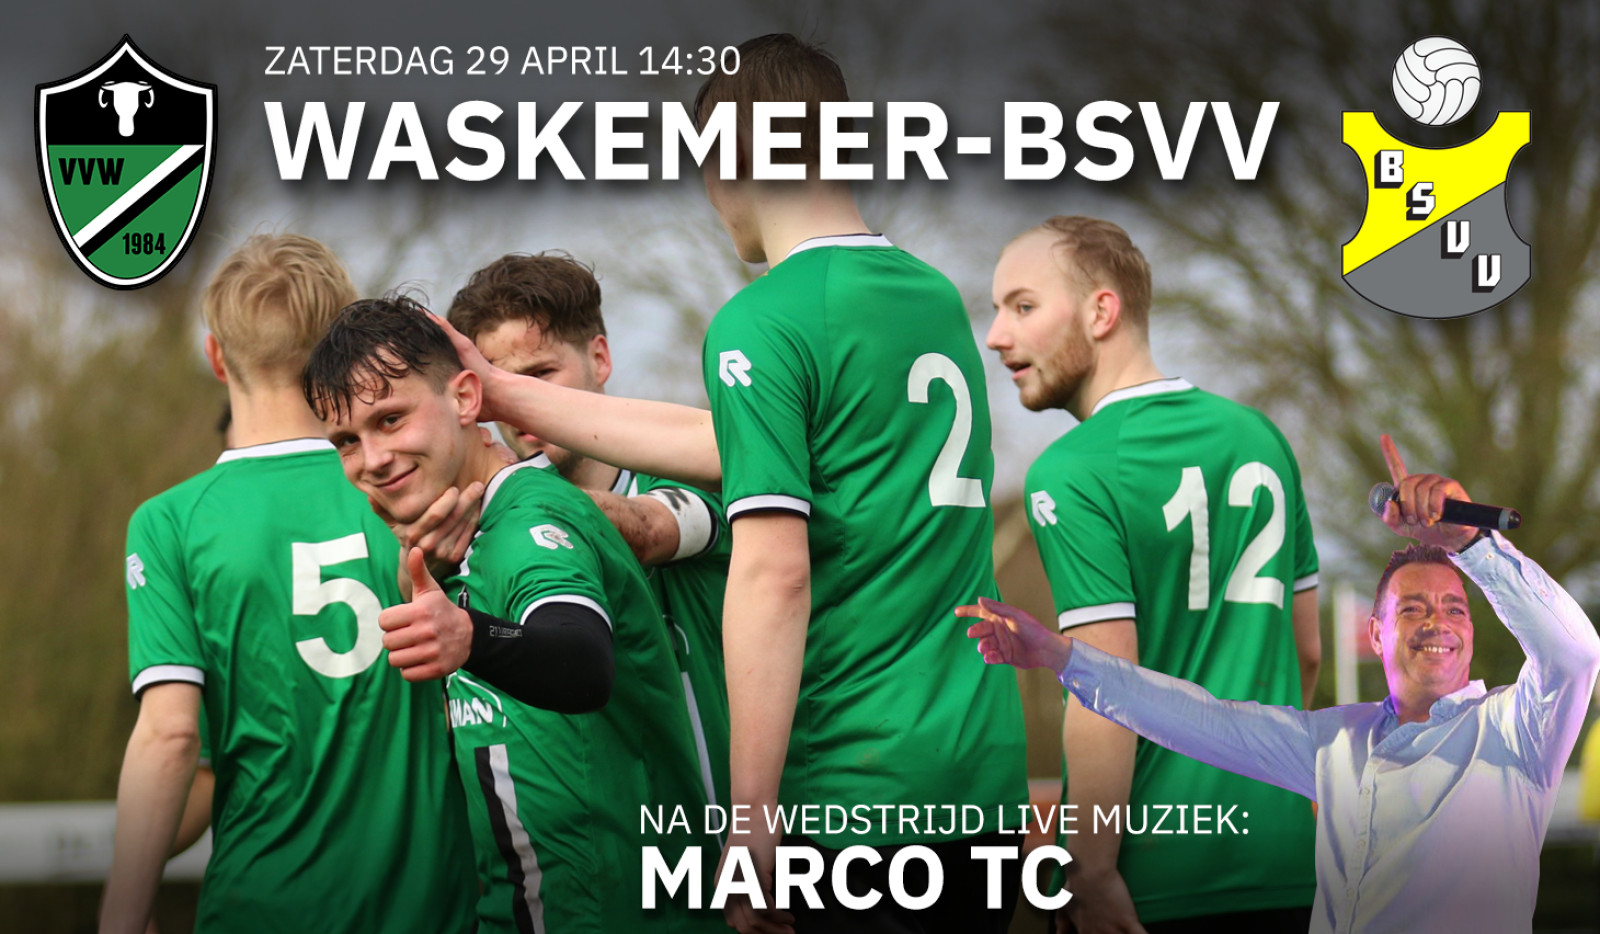 Waskemeer ontvangt hekkensluiter BSVV. Na de wedstrijd live muziek van Marco TC!